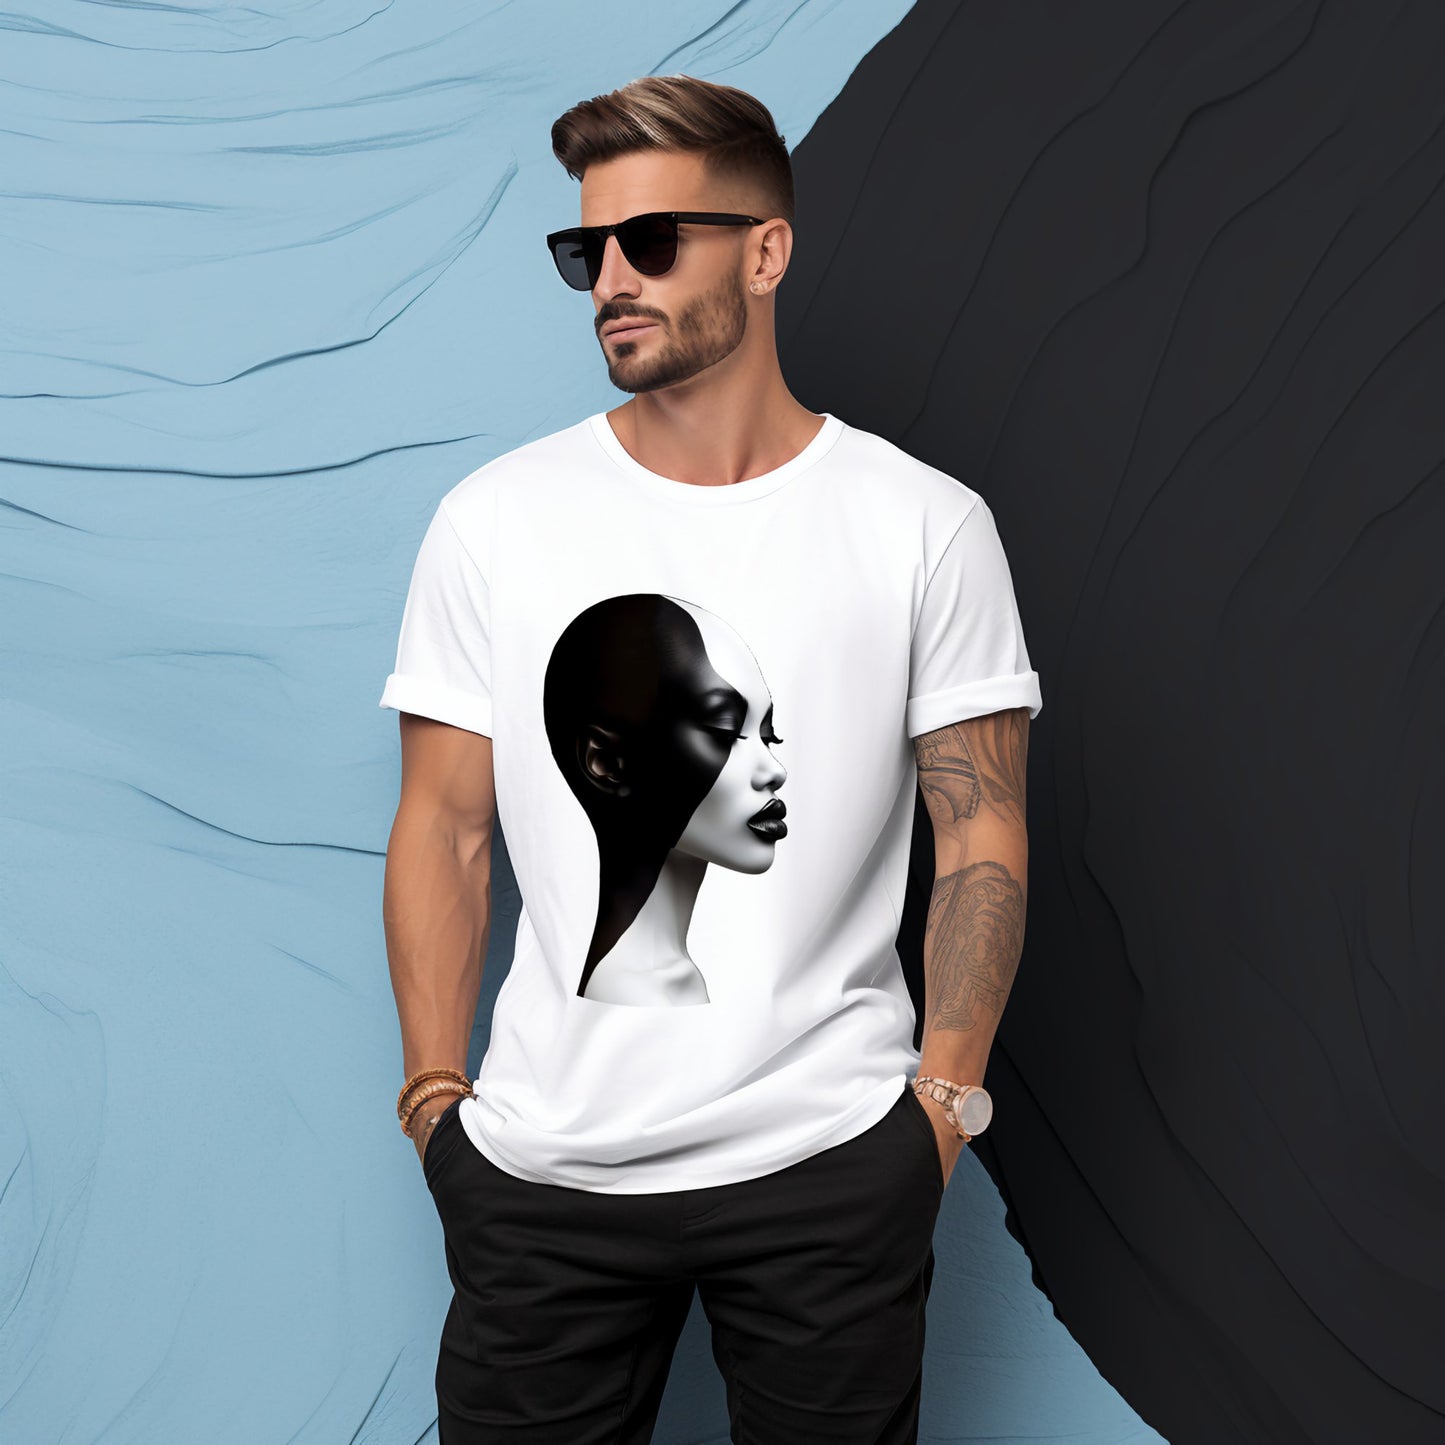 Vyriški marškinėliai „Black & White“, meniška ir stilinga apranga iš Designed By Me, skirta pabrėžti asmeninį individualumą ir spalvų kontrastą, Vyriški marškinėliai,Visi produktai